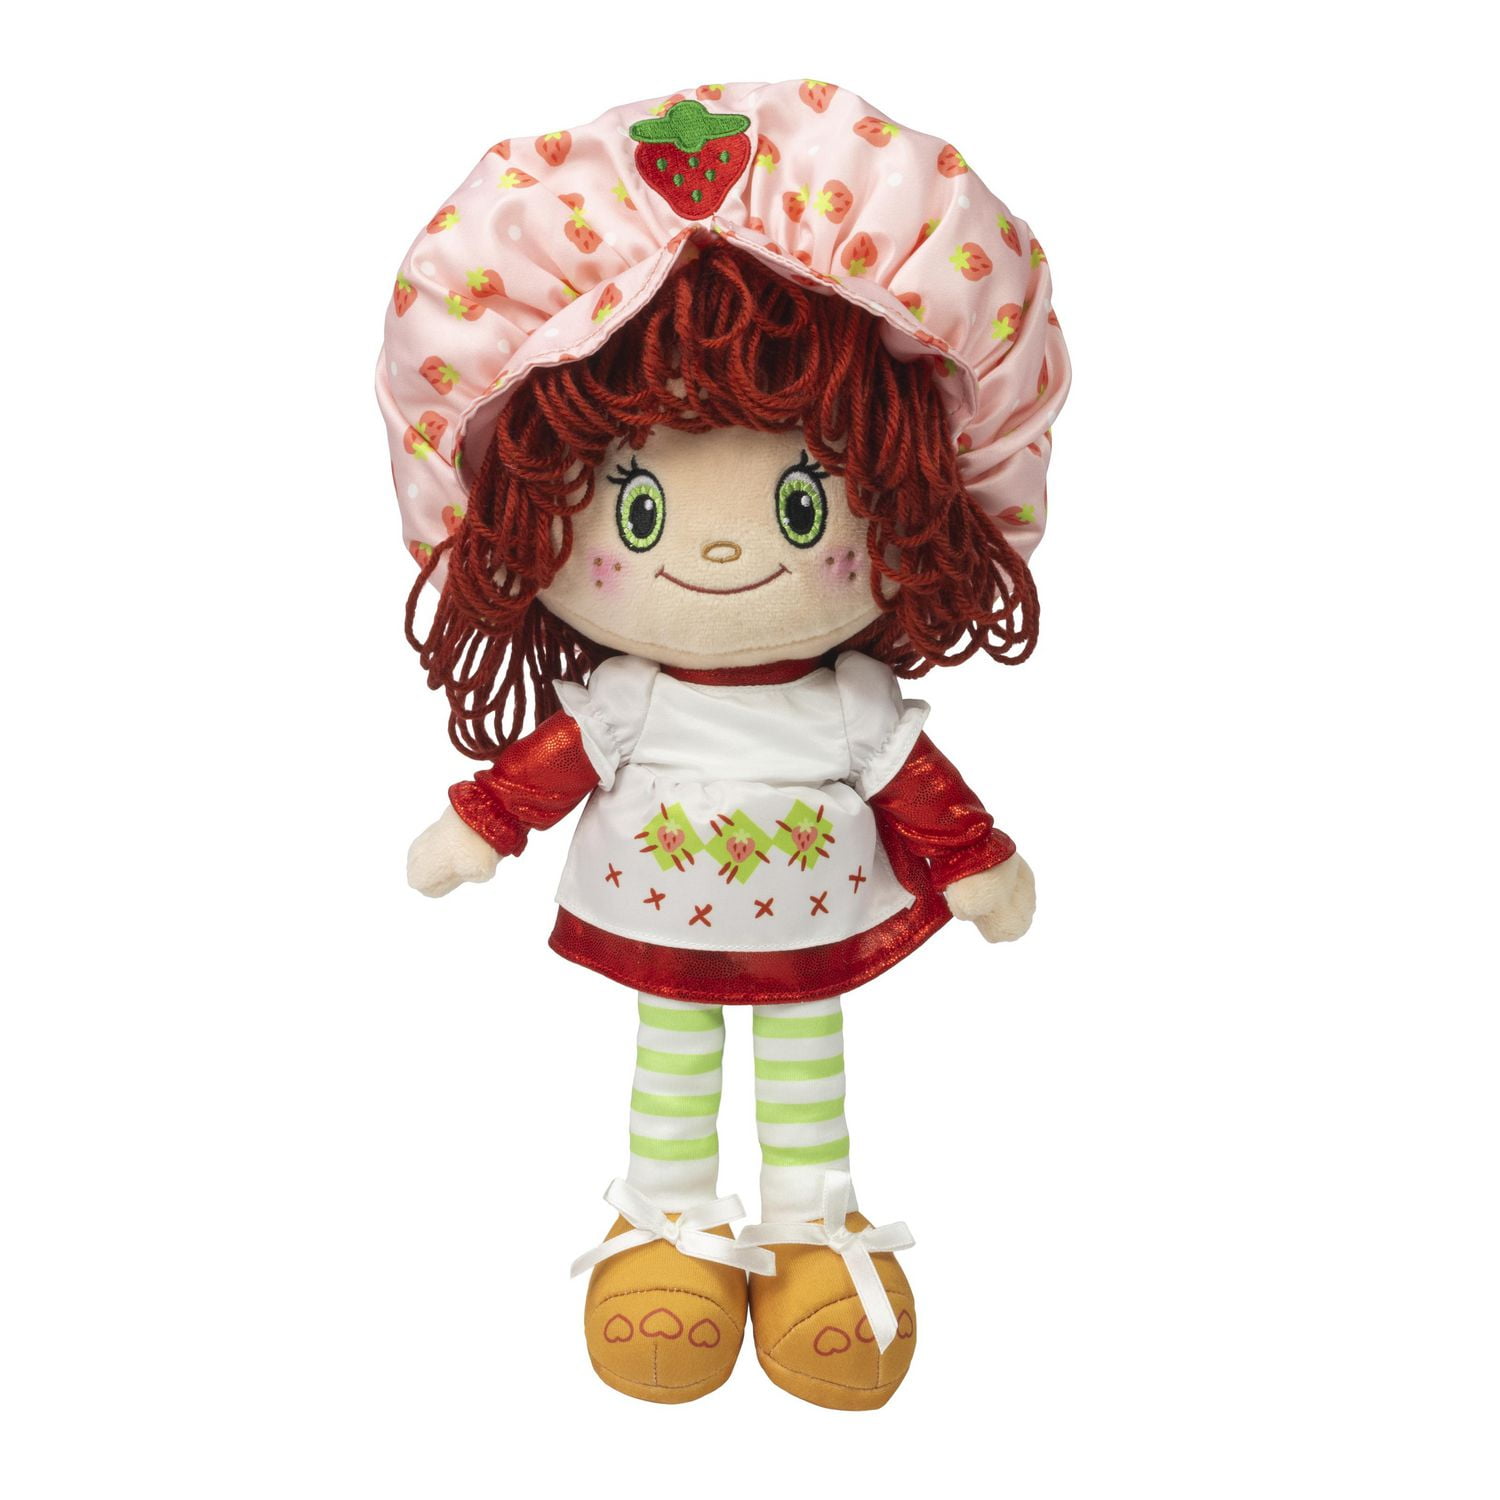 Robot Check  Strawberry shortcake doll, Vintage strawberry